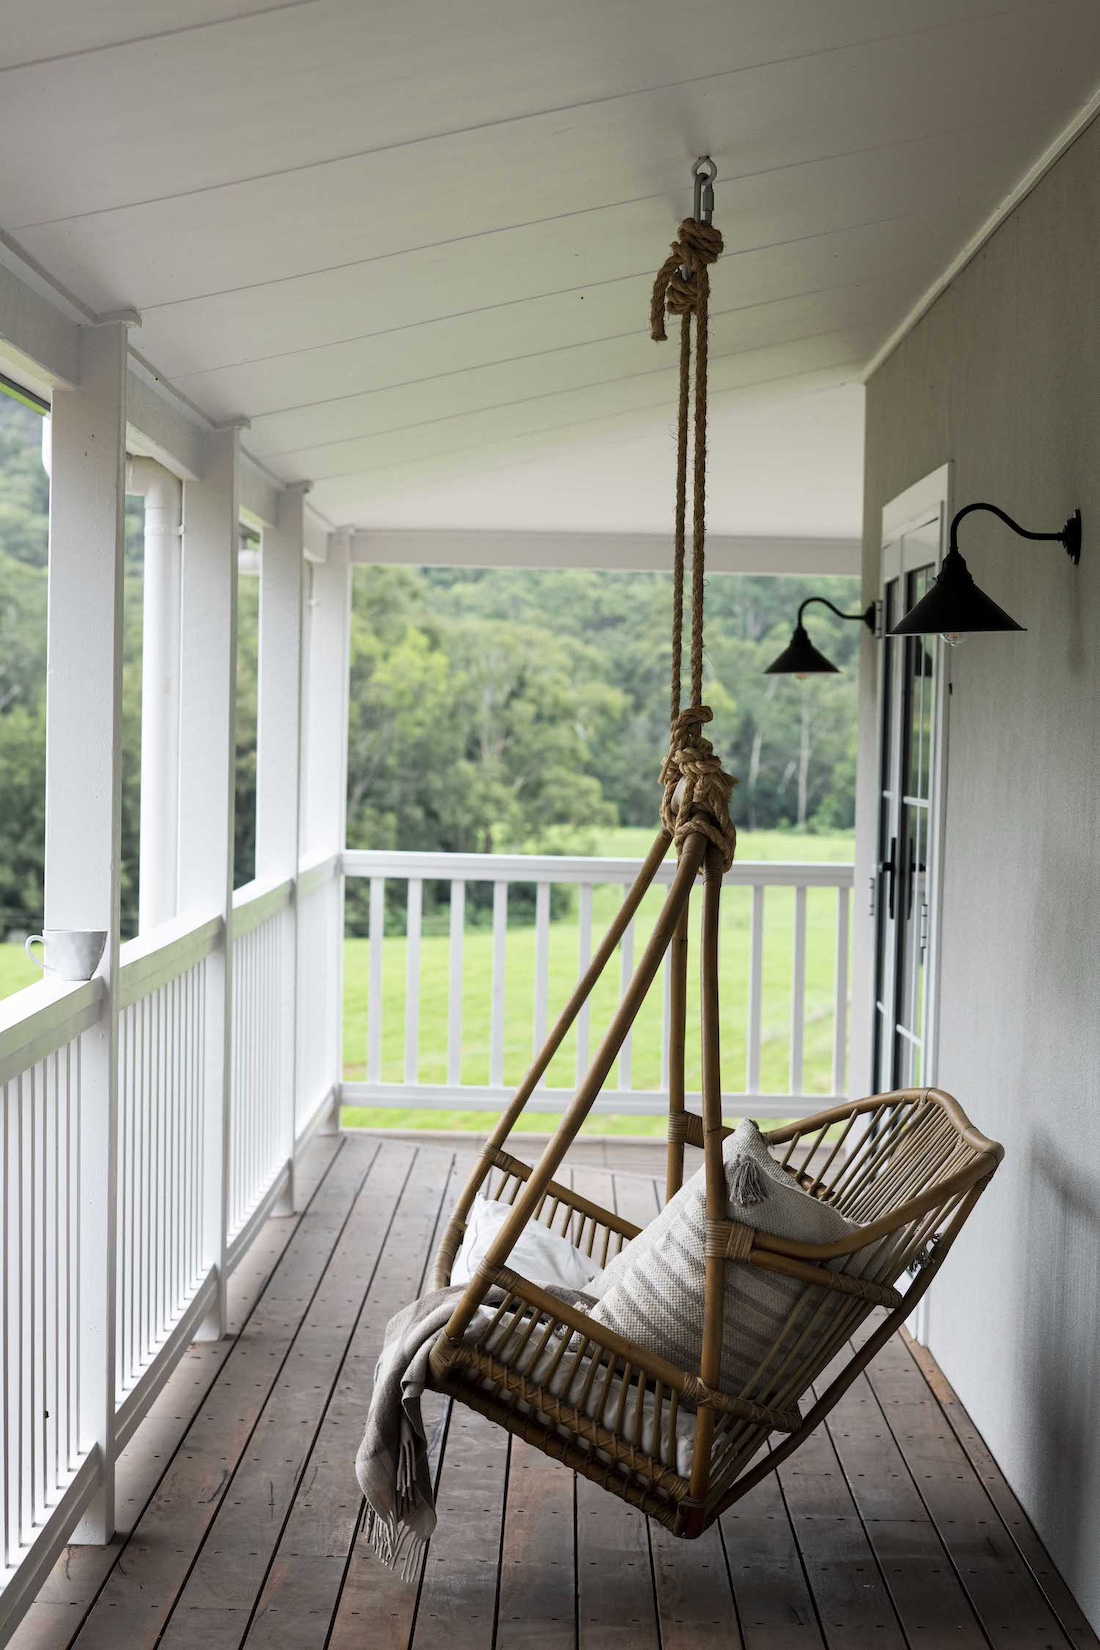 Hanging swing on verandah